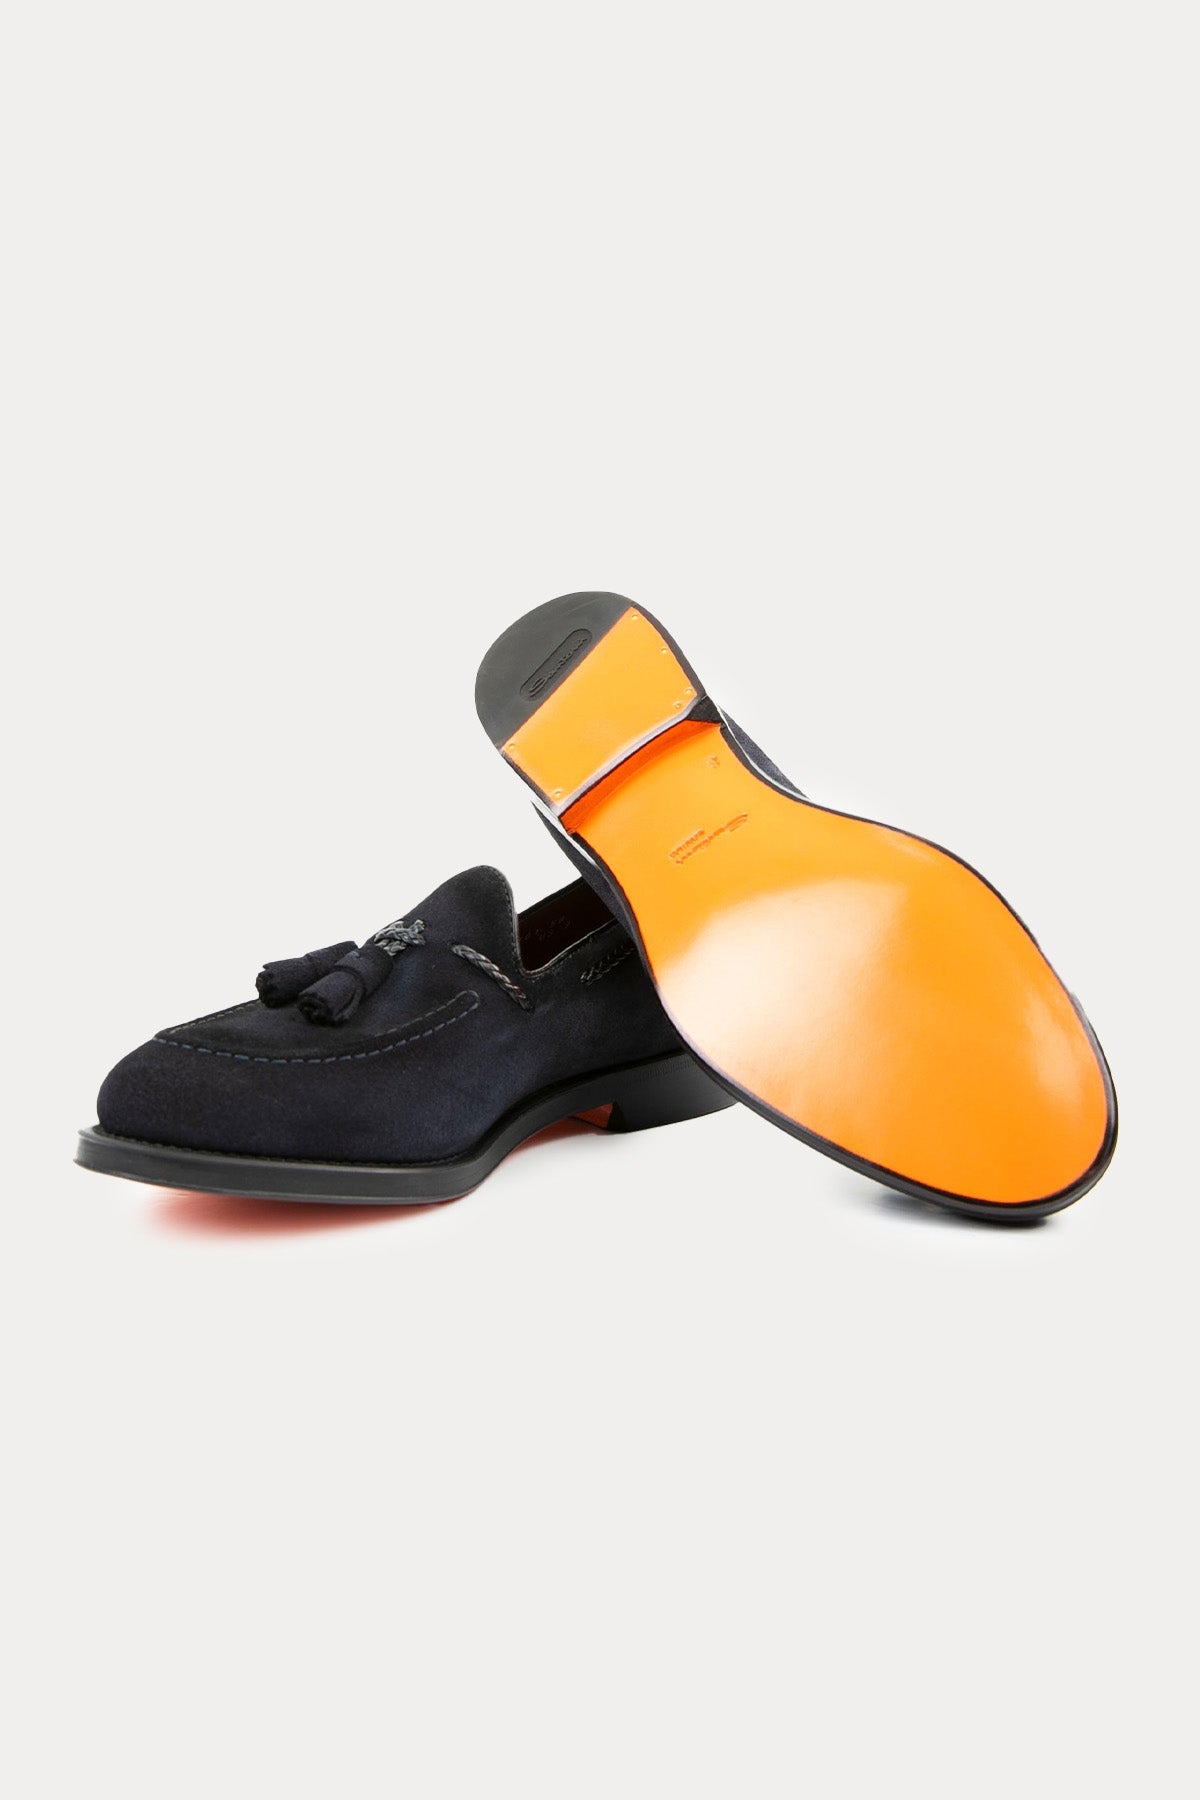 Santoni Goodyear Taban Nubuk Deri Püsküllü Loafer Ayakkabı